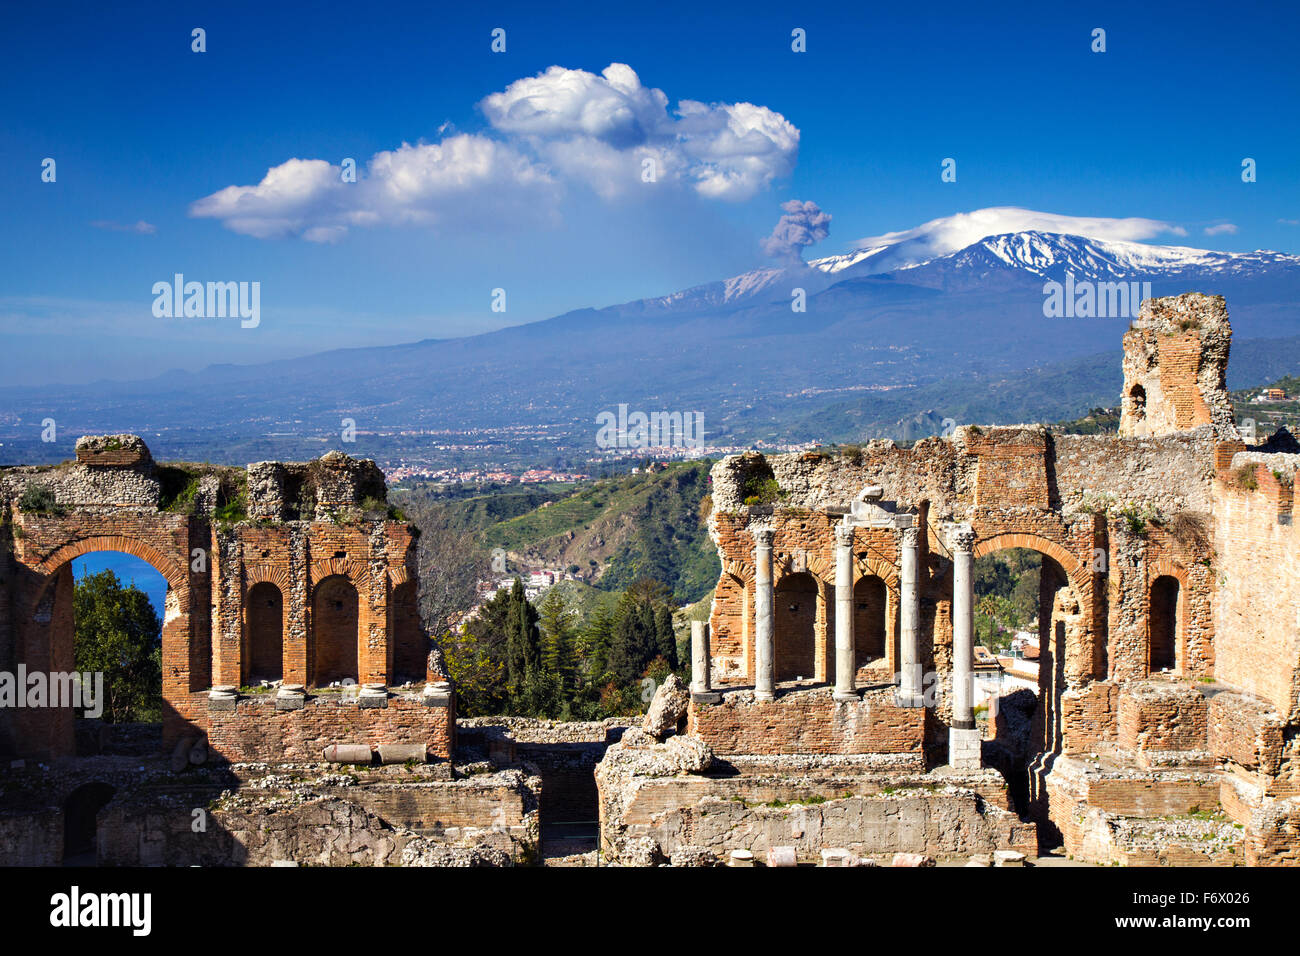 Ruinas del teatro greco-romano con el Etna en erupción, Taormina, Sicilia, Italia Foto de stock